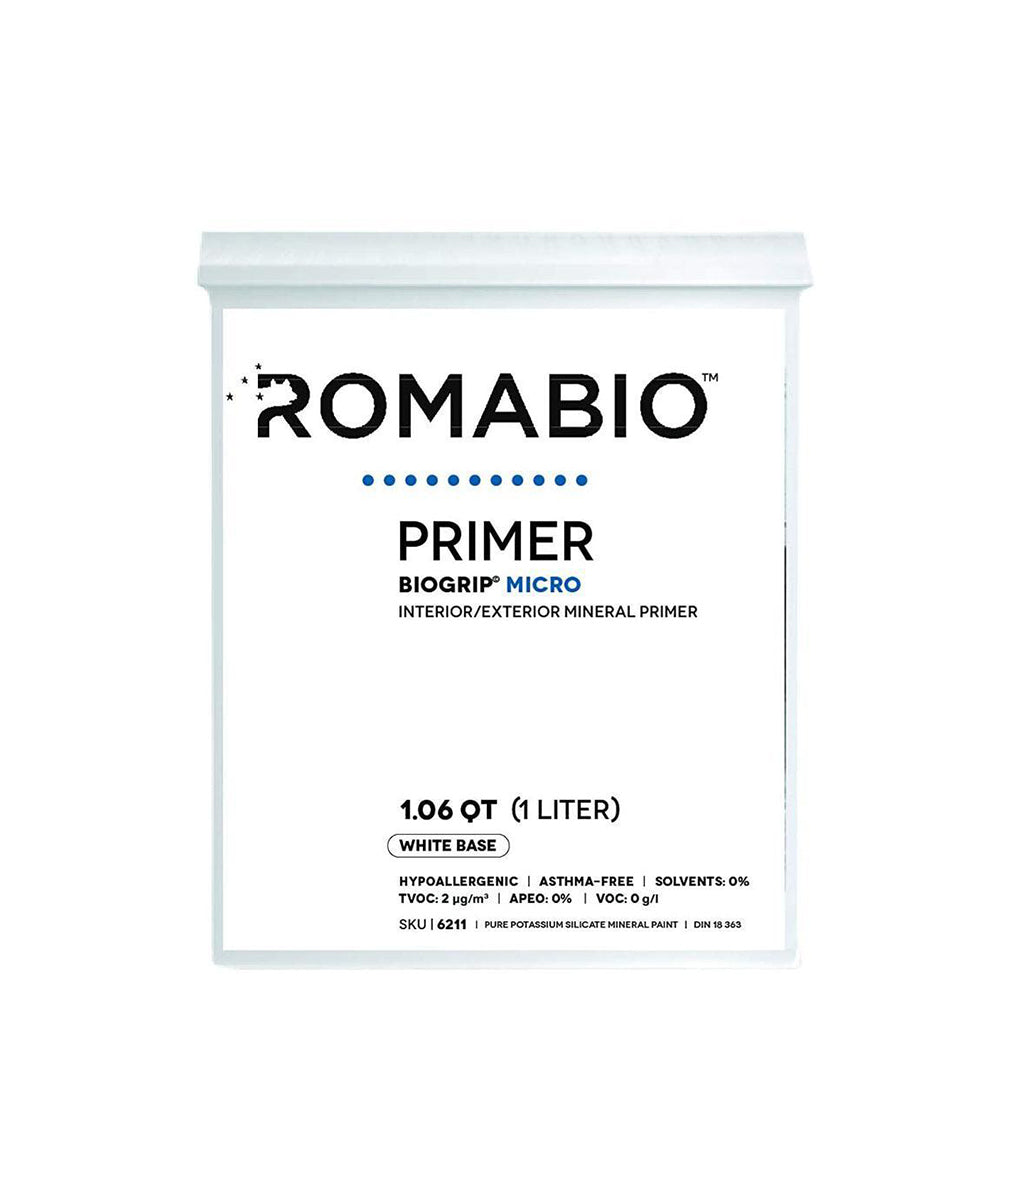 ROMABIO Biogrip Micro Primer available at JC Licht in Chicago, IL.